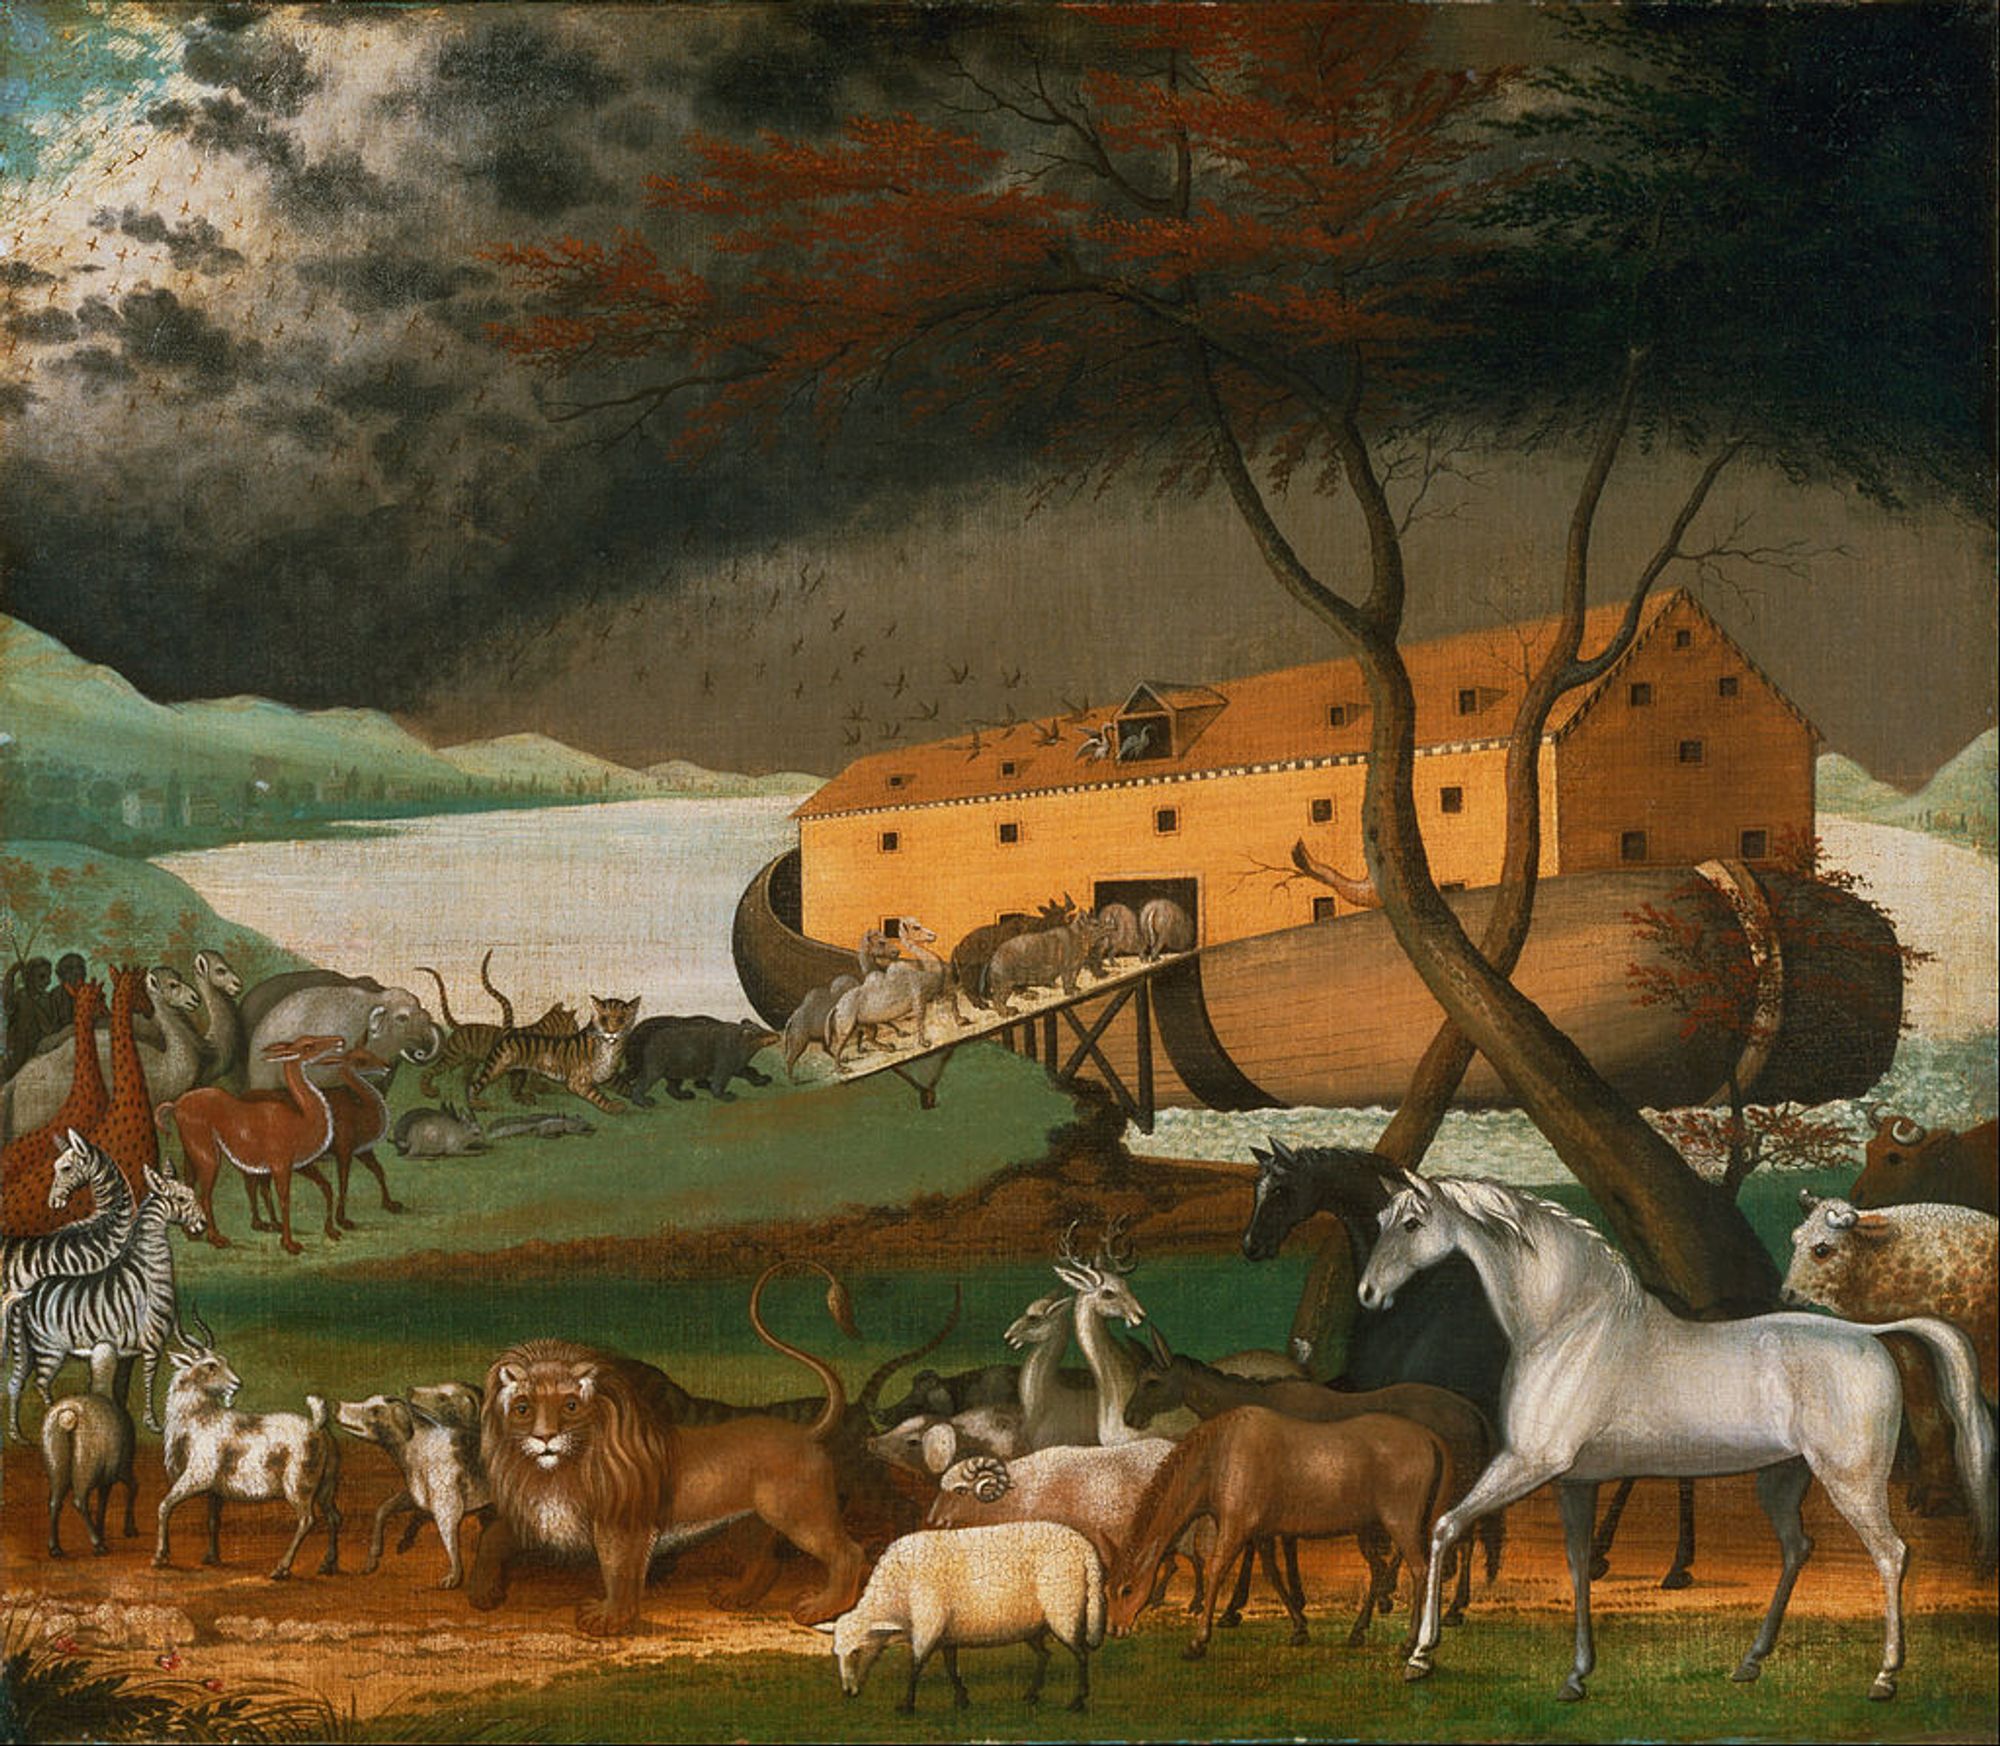 Noah's Ark - Edward Hicks. Source: Wikipedia.